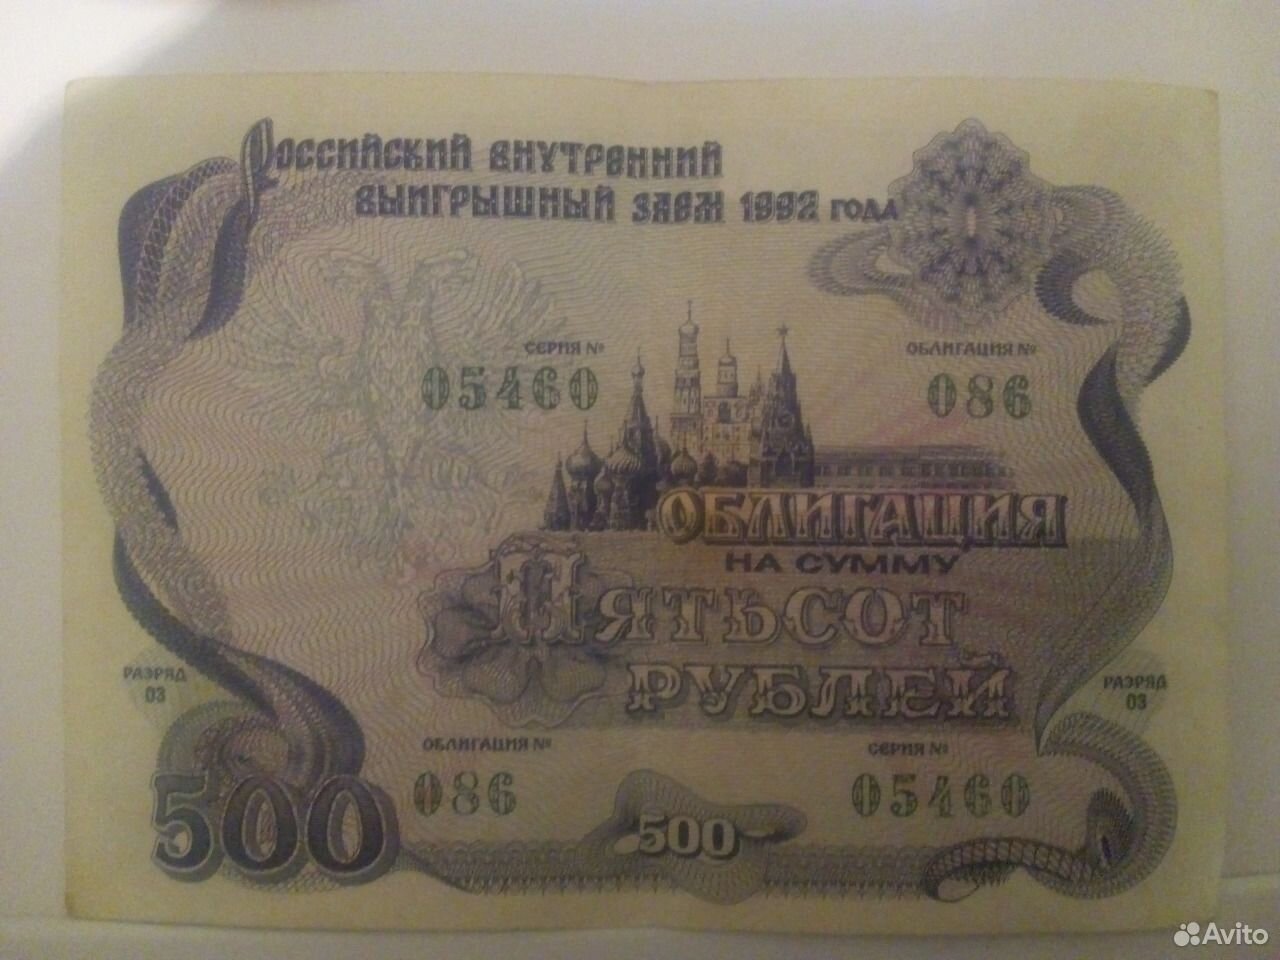 Ценная бумага стоит t2 тыс рублей